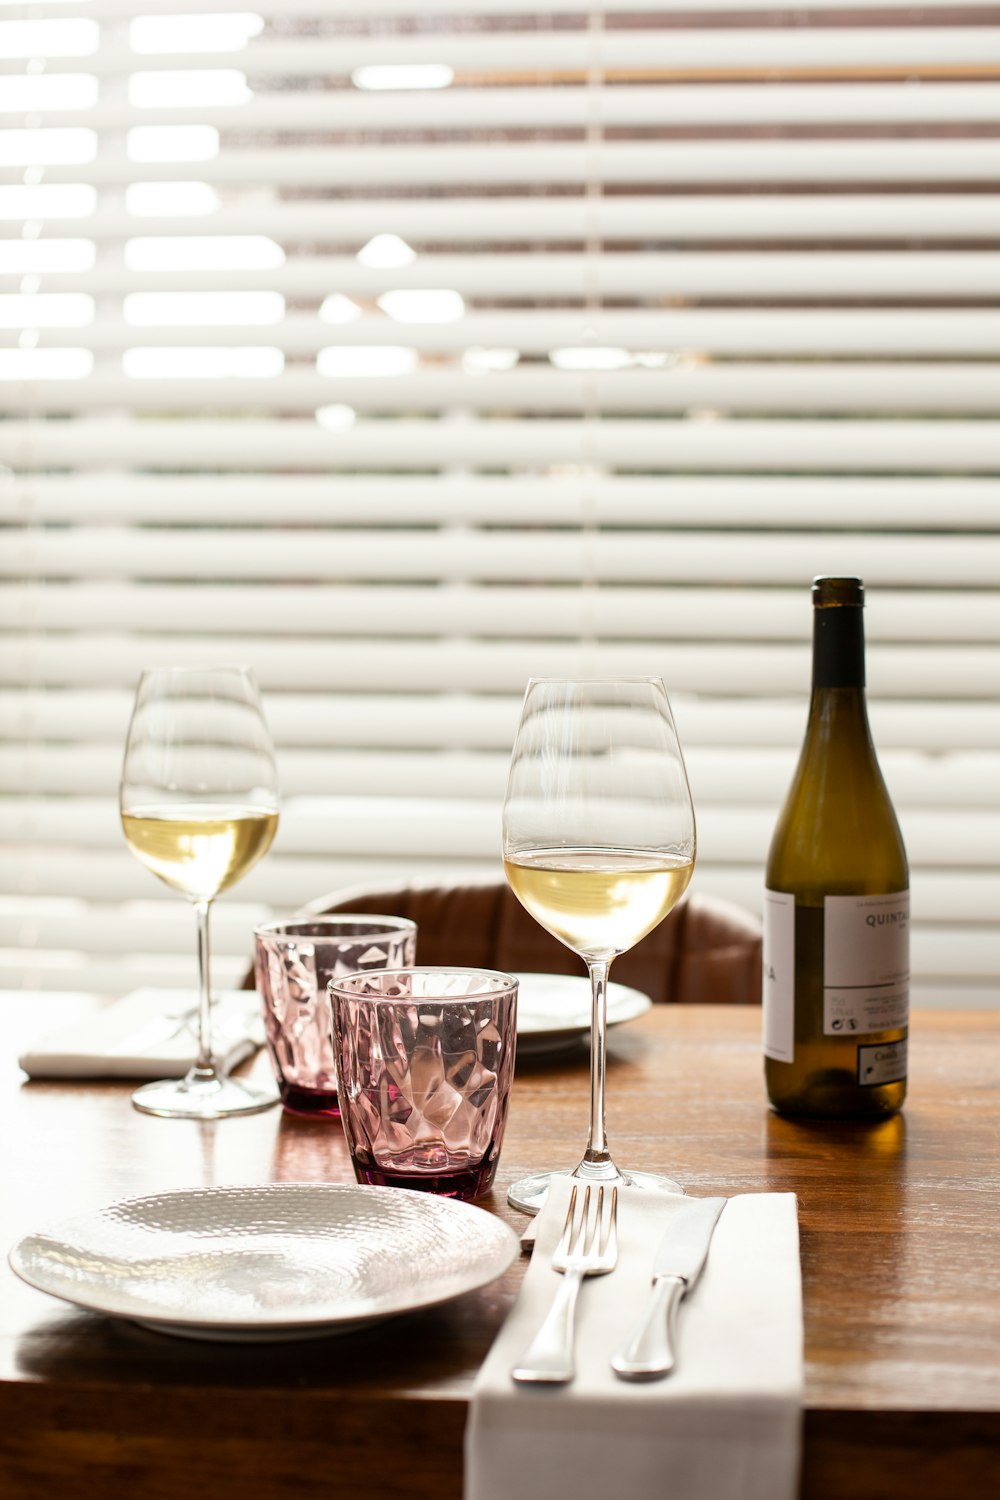 Copa de vino transparente junto a la botella de vino sobre la mesa